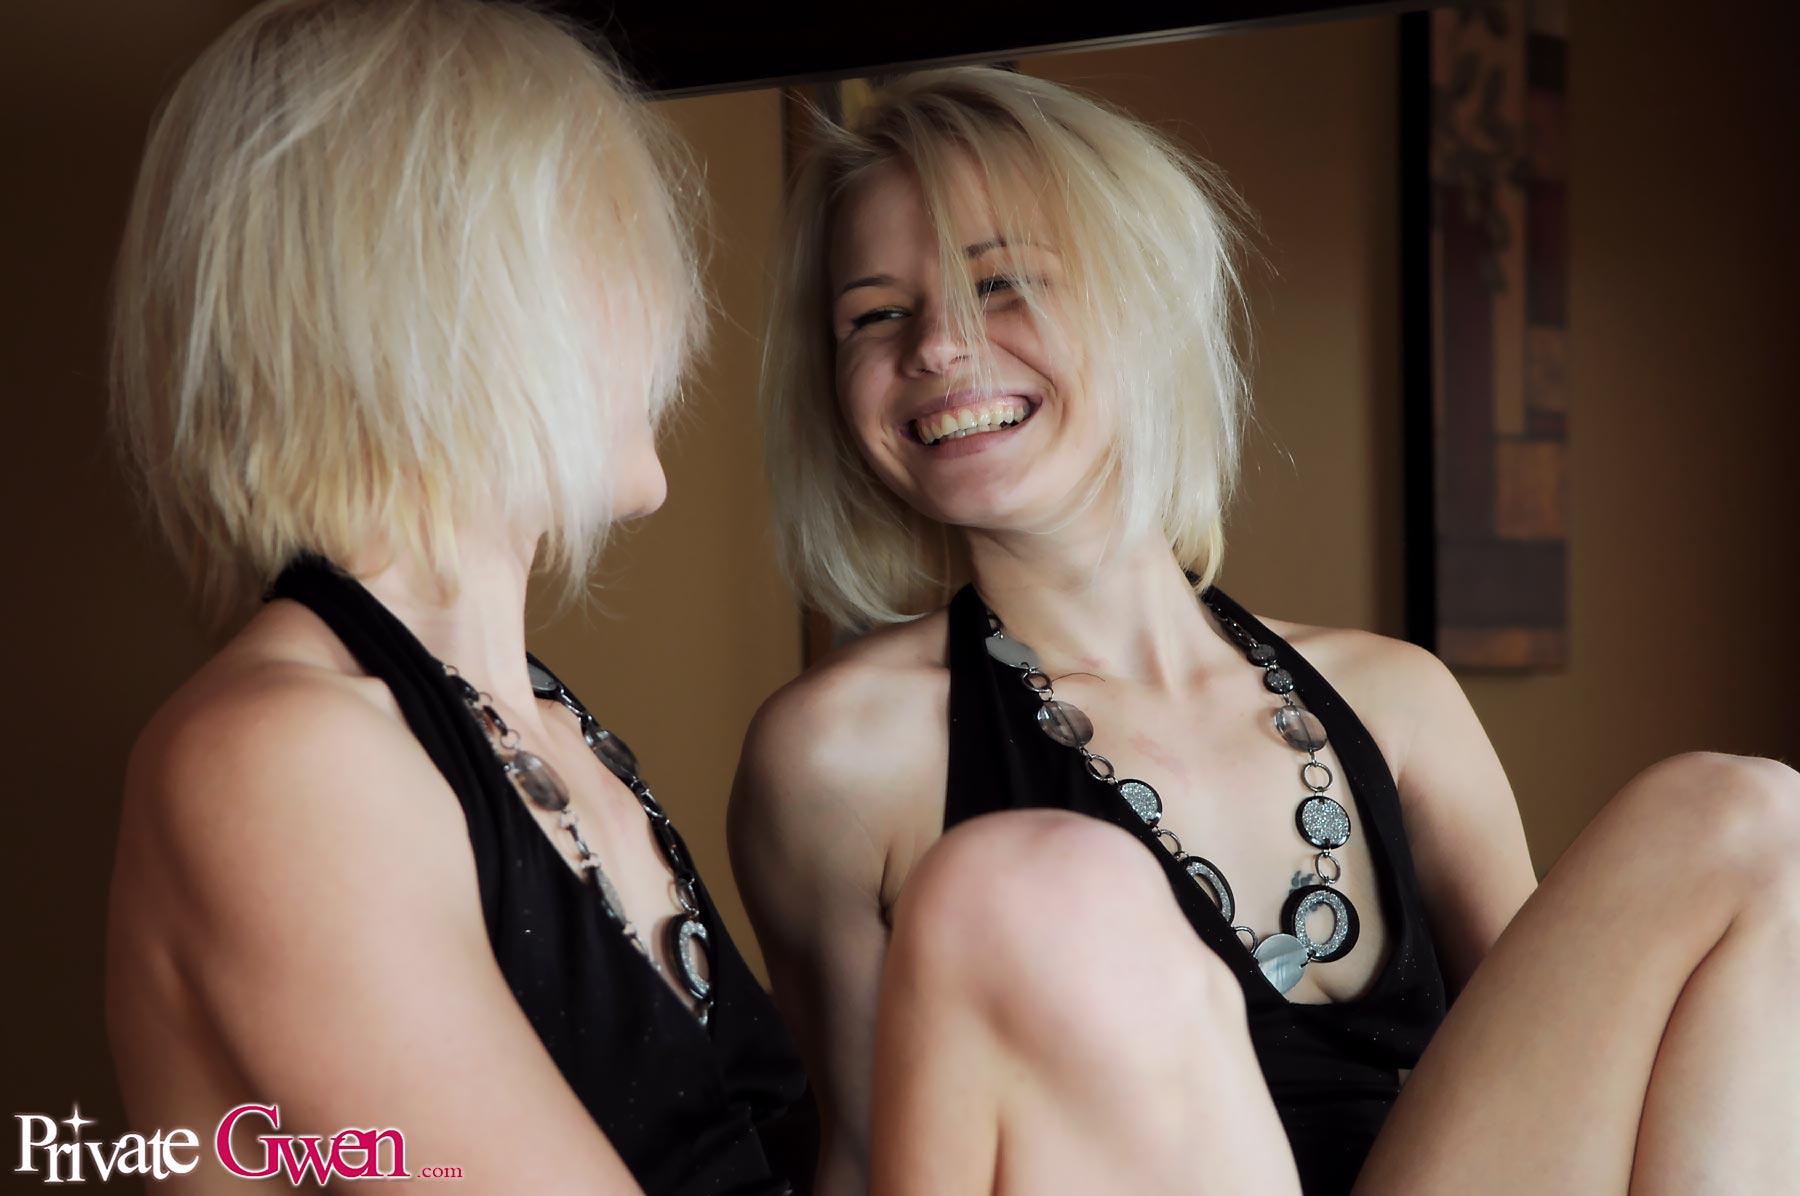 Immagini di giovane slut privato Gwen controllando se stessa allo specchio
 #59839739